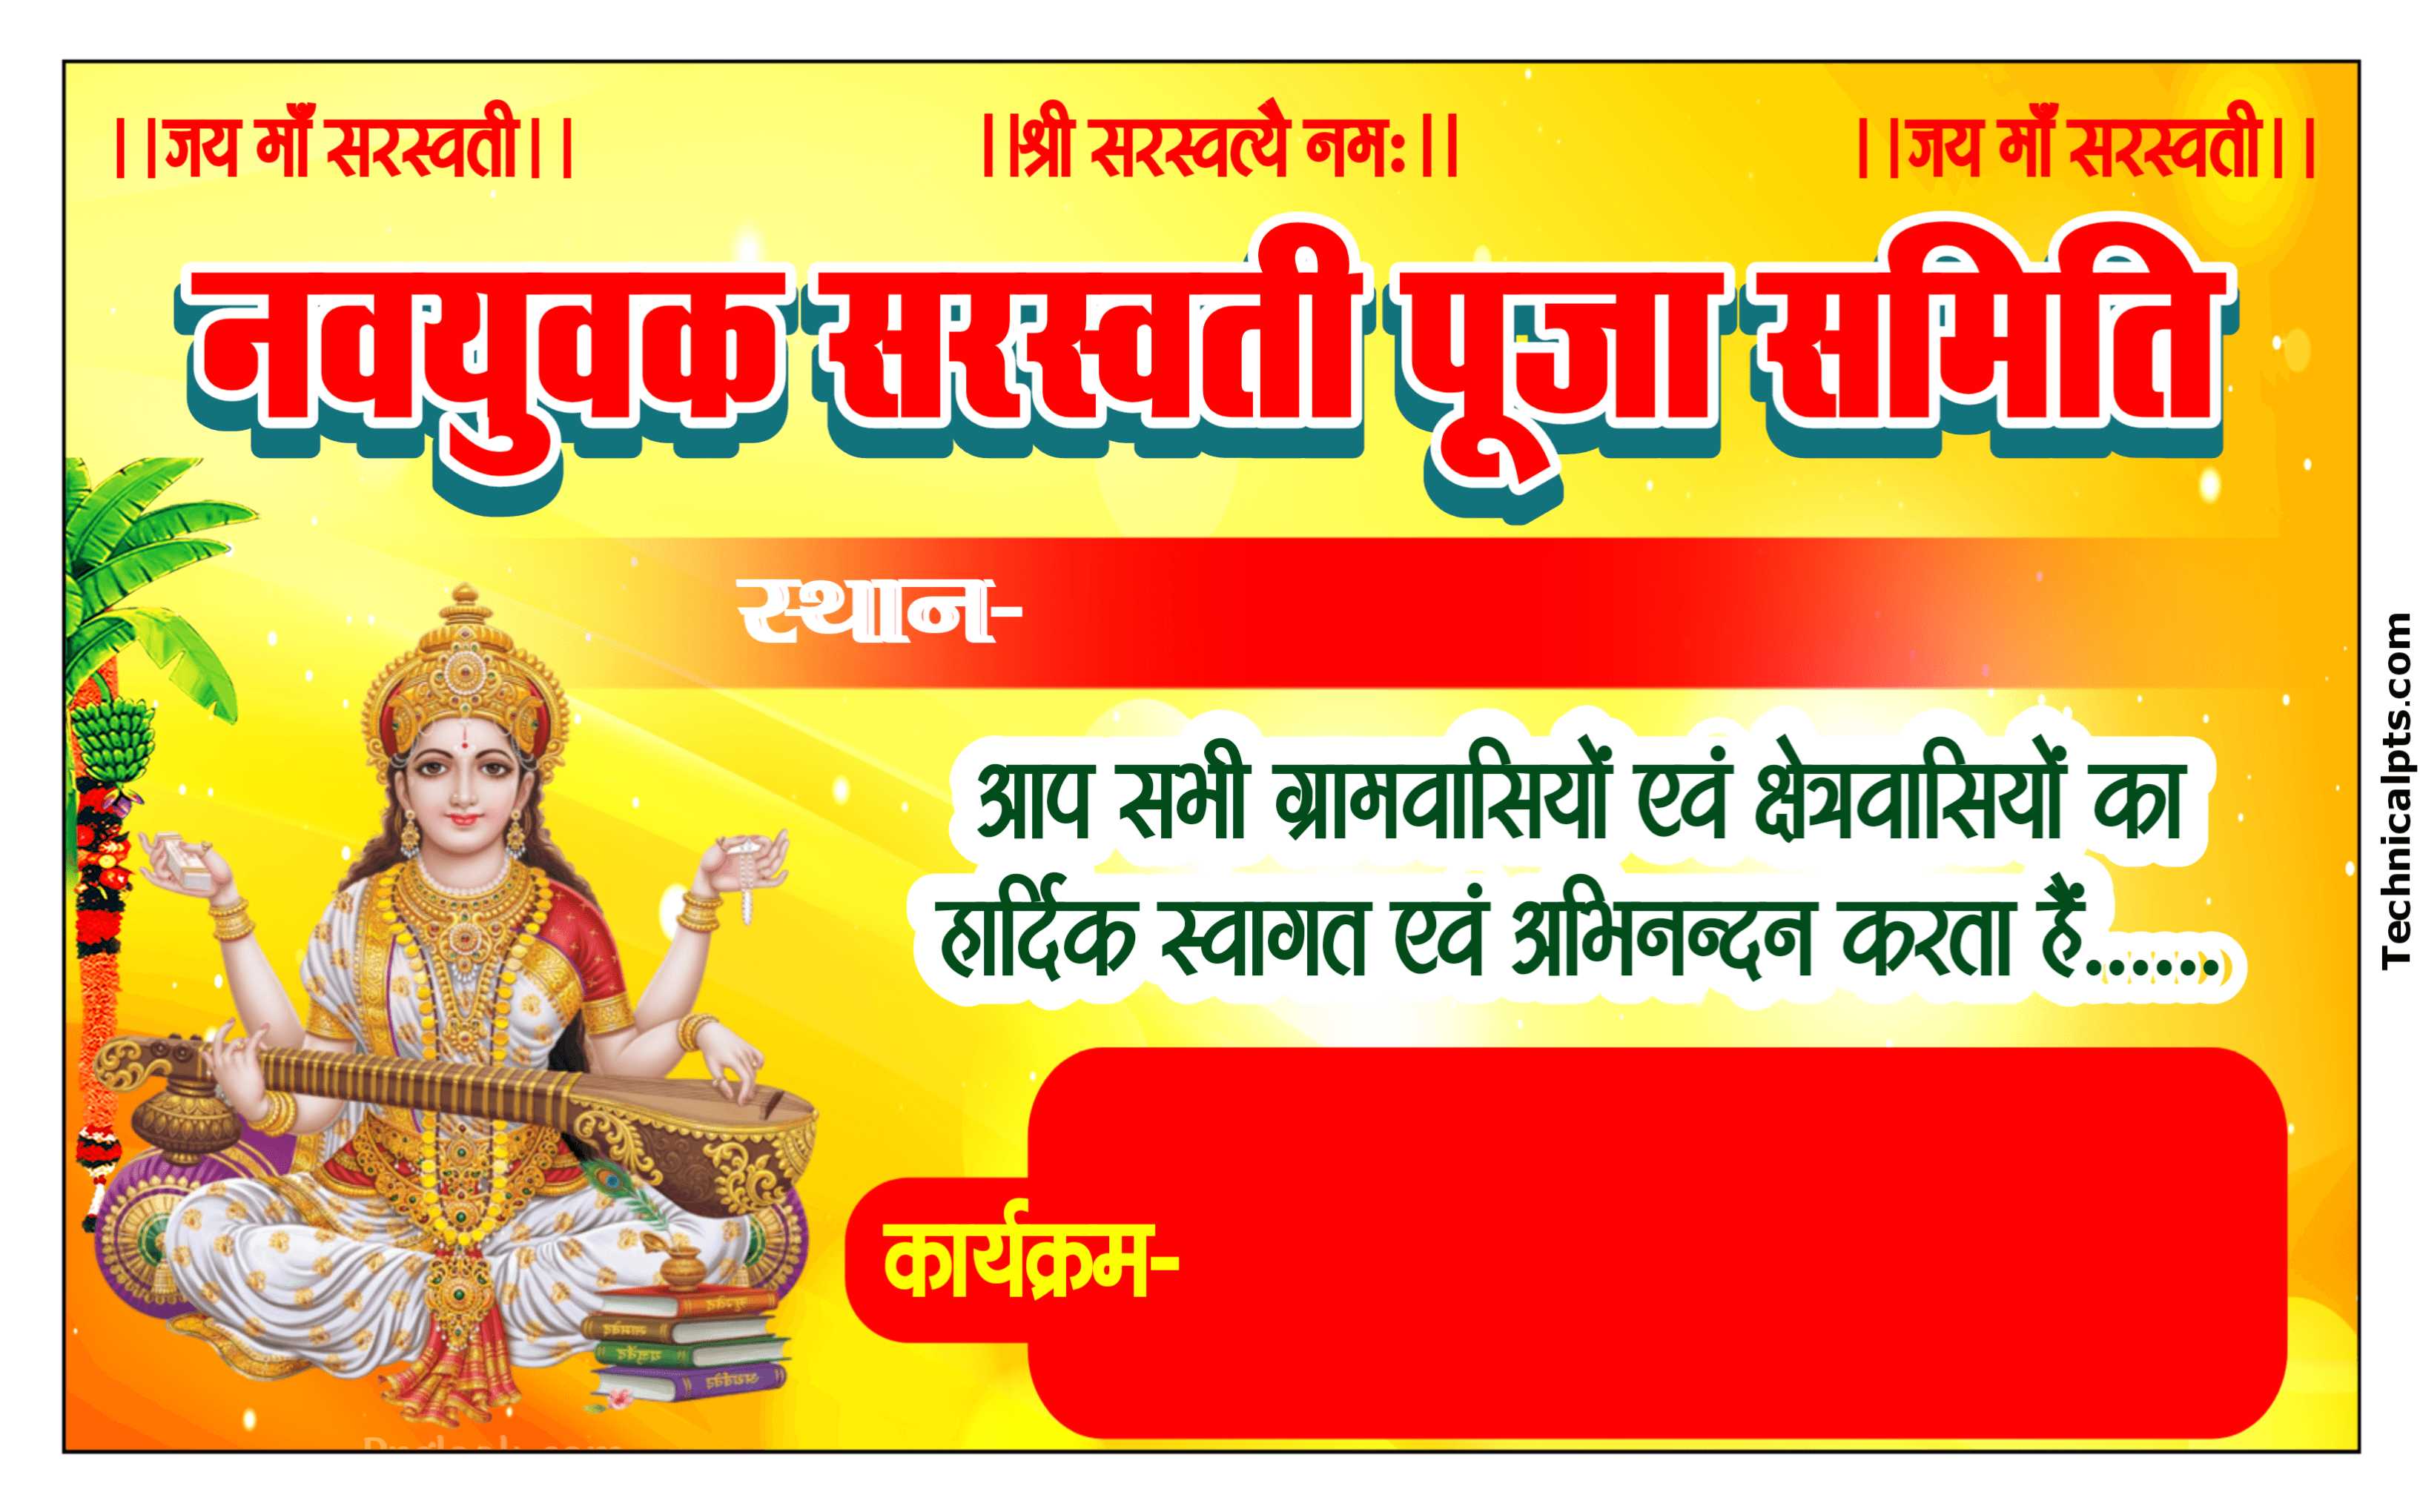 Saraswati Puja samiti banner plp file download| Saraswati Puja samiti ka poster kaise banaye mobile se